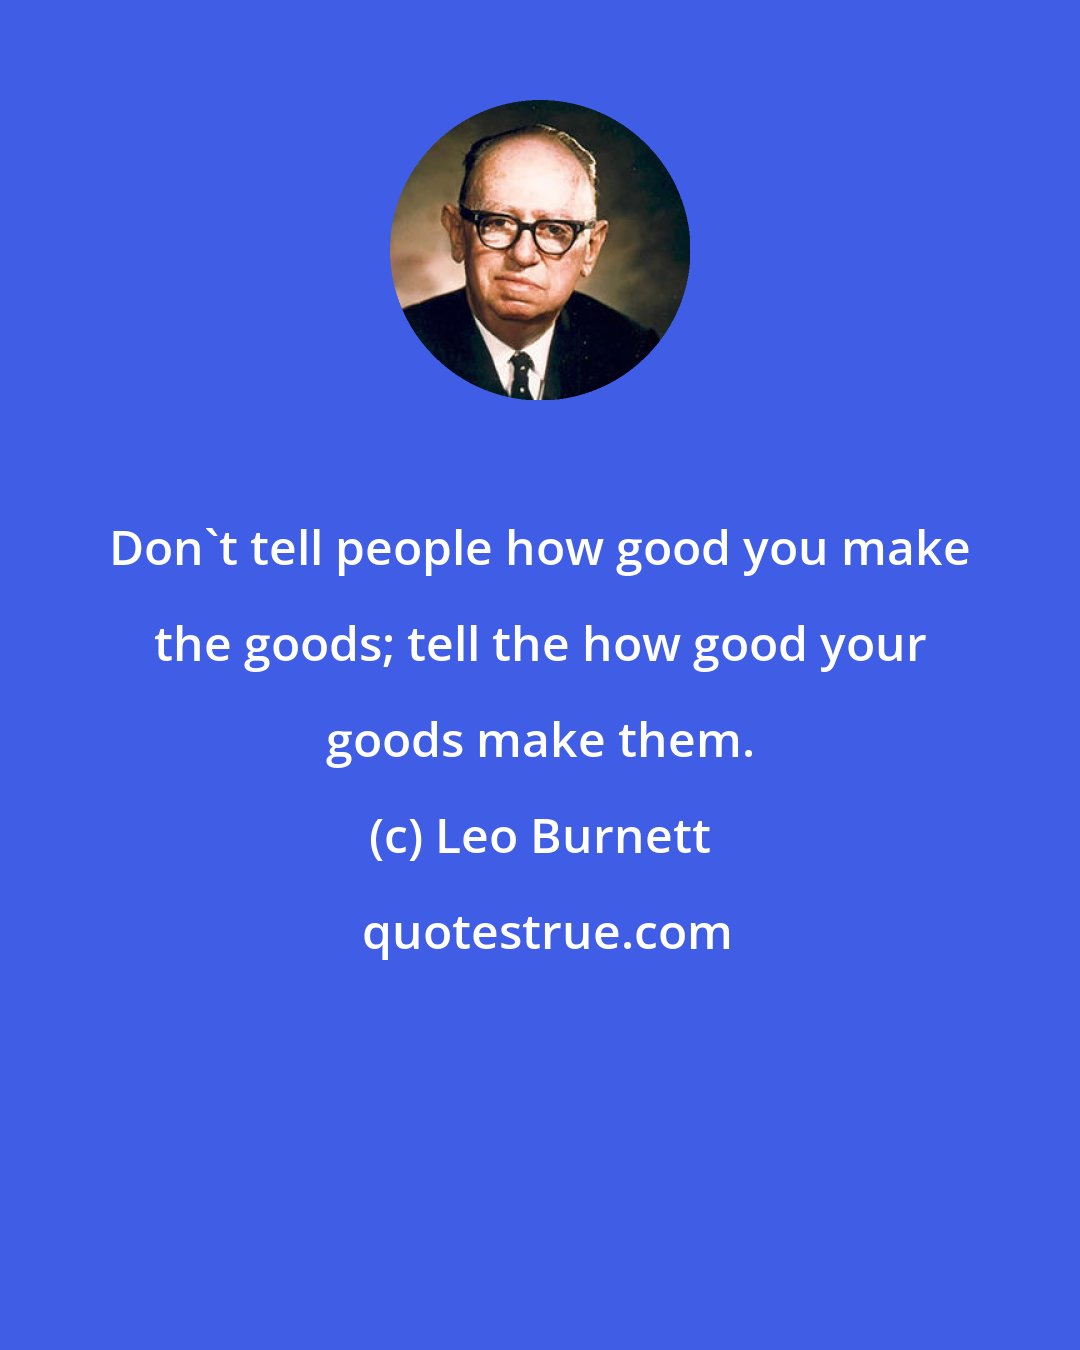 Leo Burnett: Don't tell people how good you make the goods; tell the how good your goods make them.